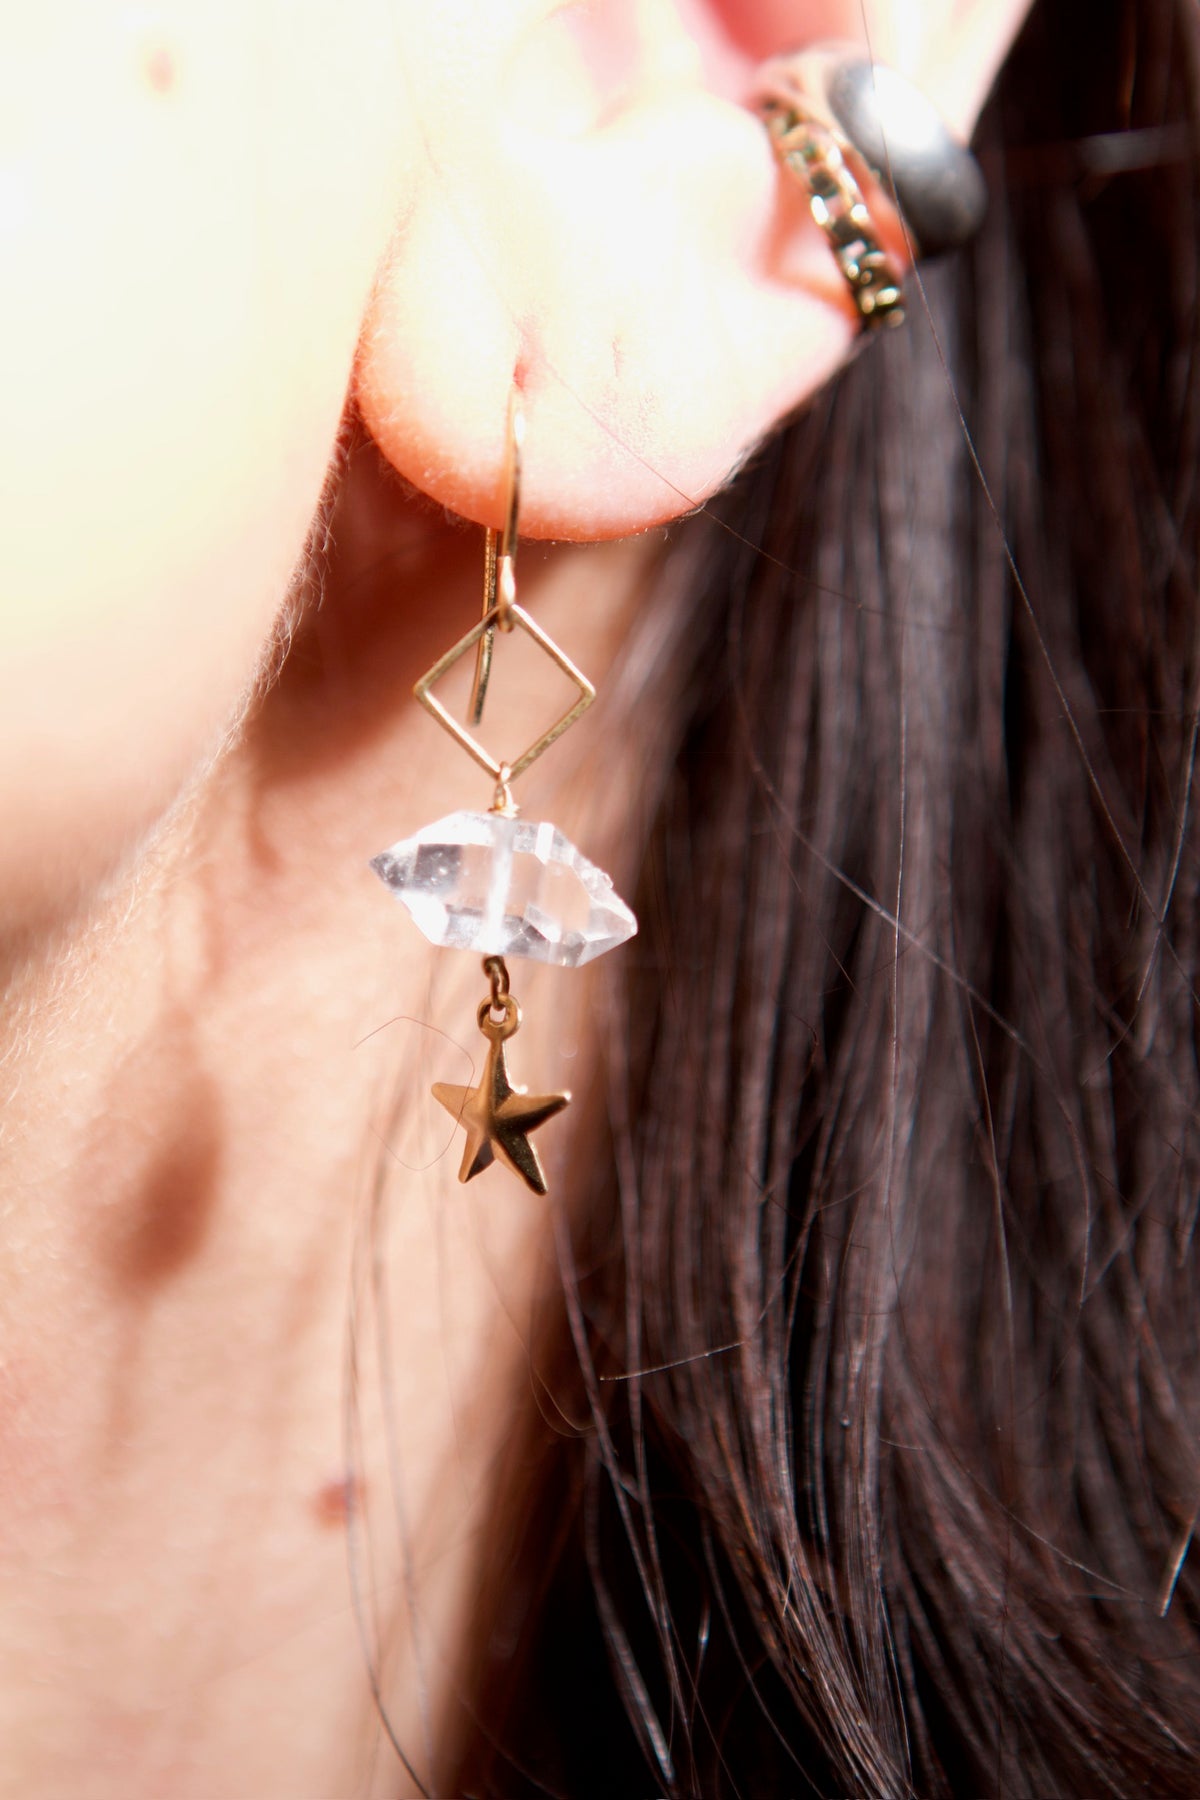 Star Herkimer Earrings